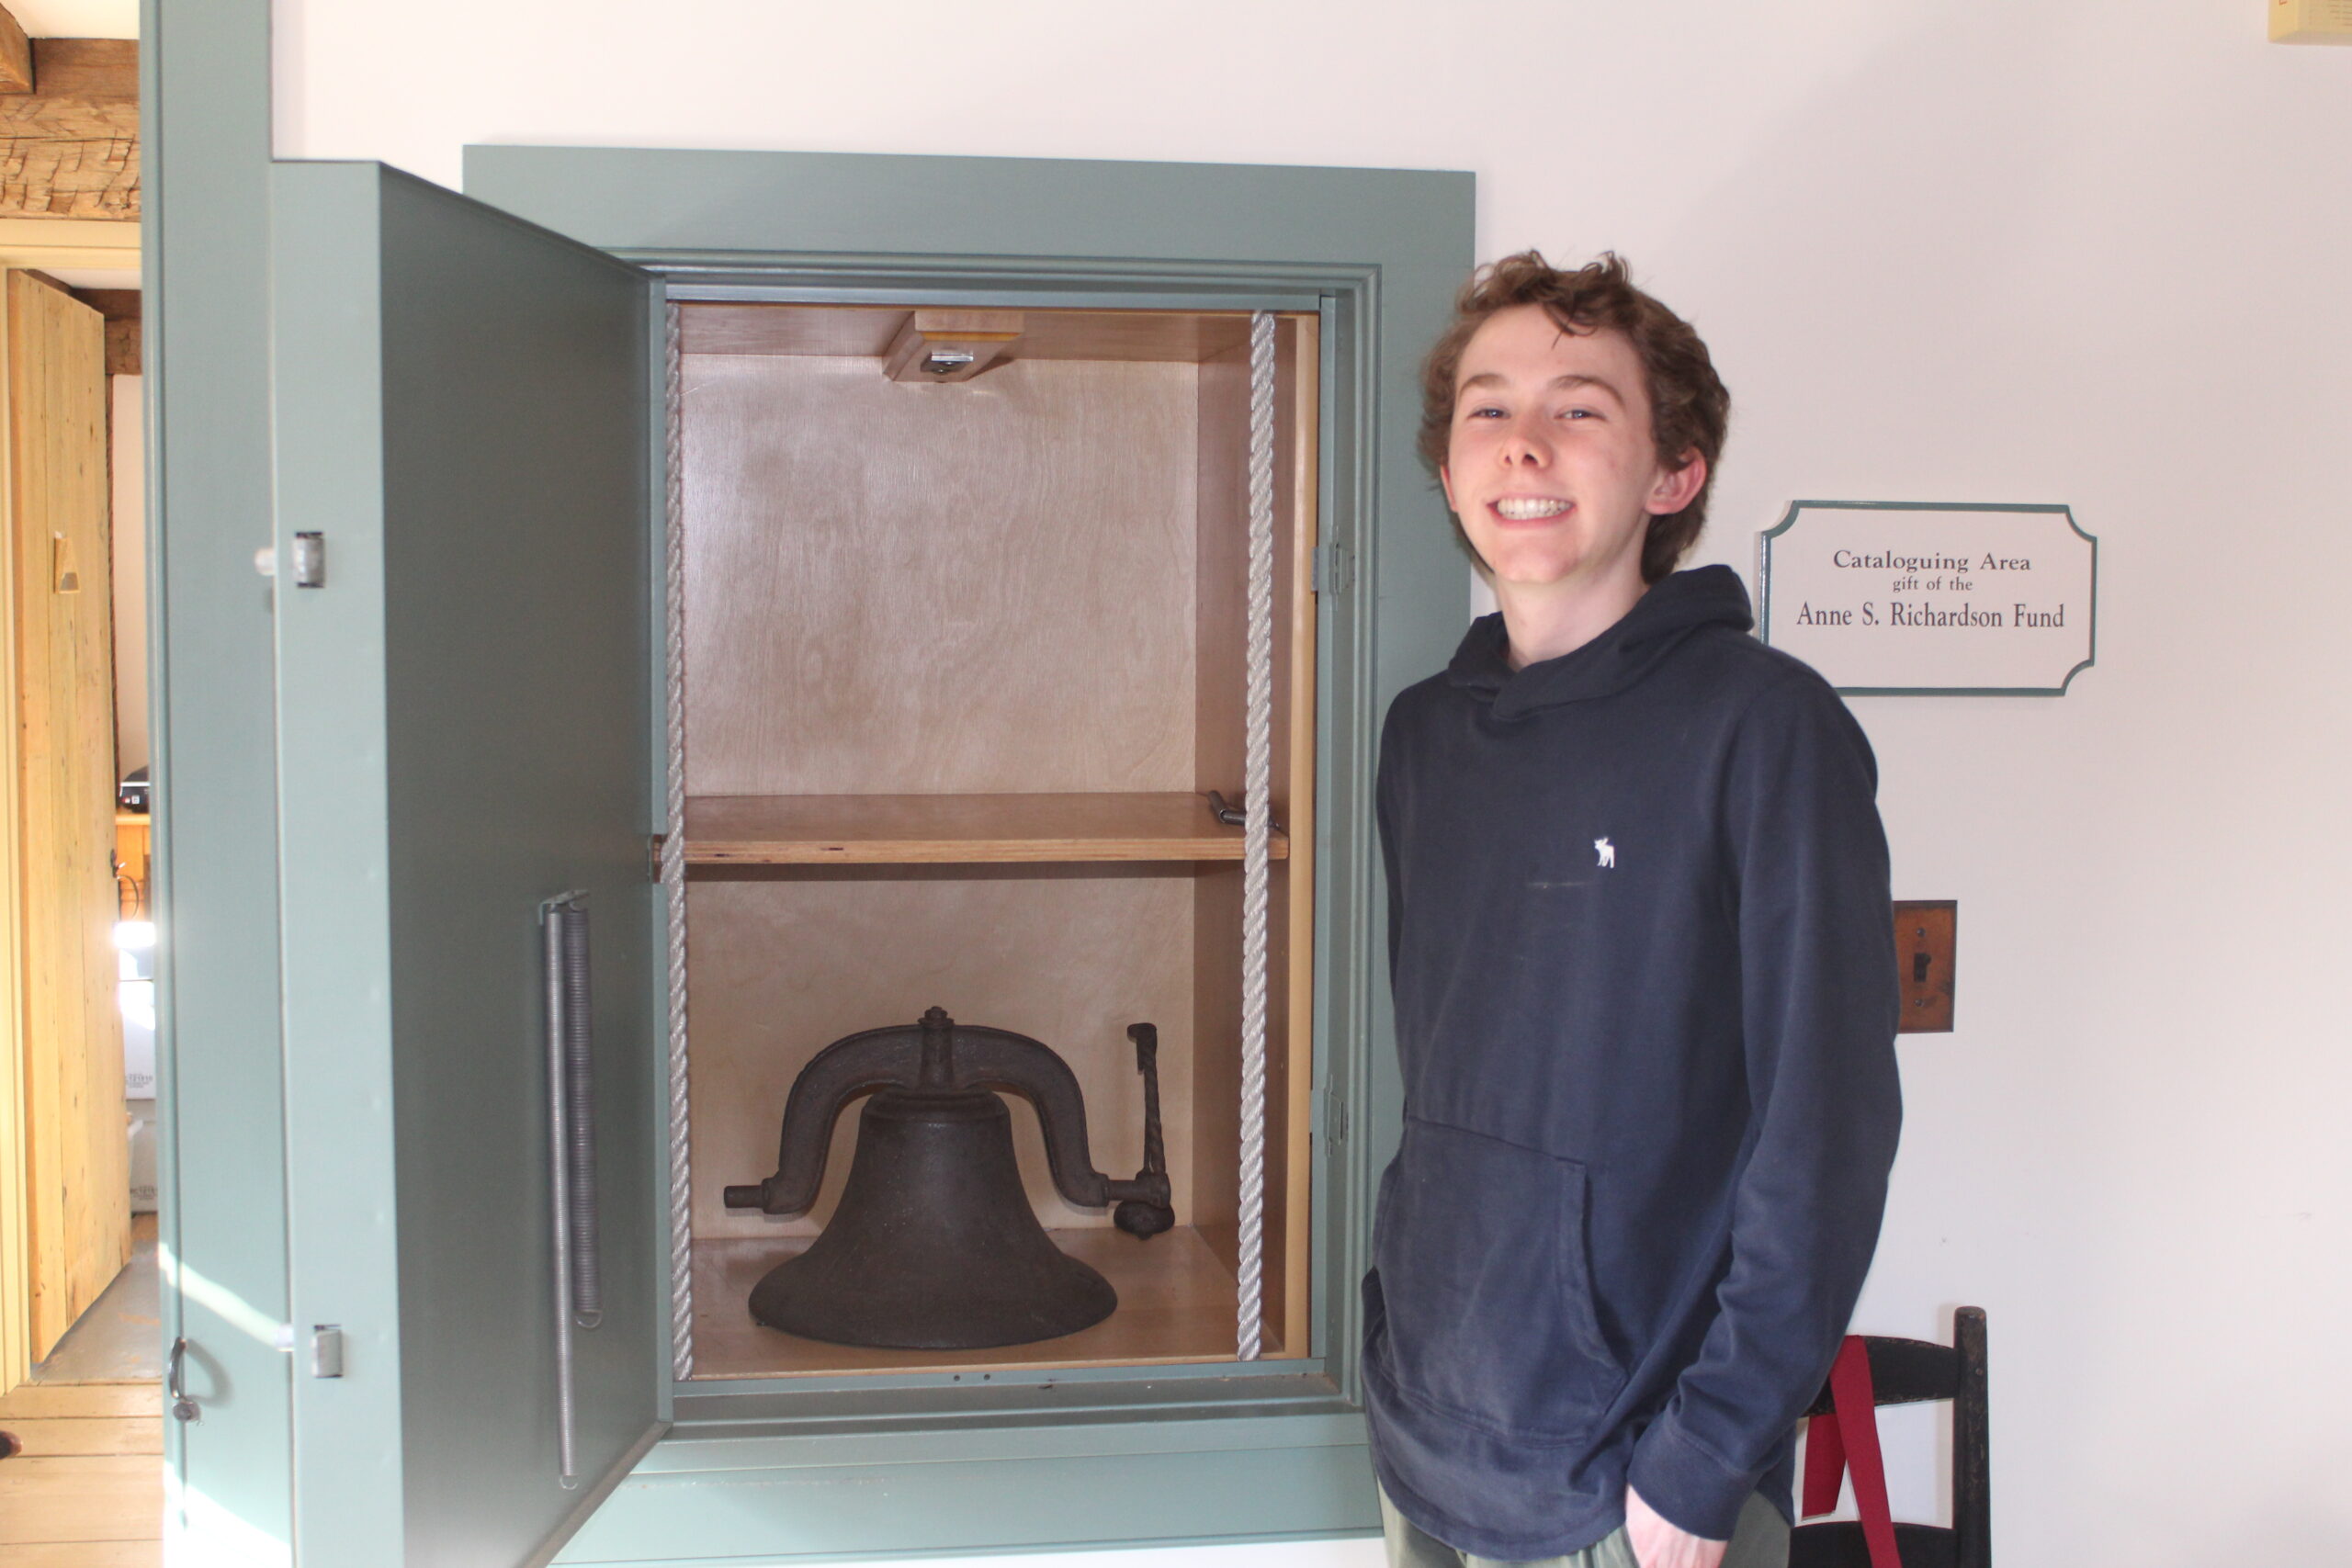 A Boy, A Bell, and a Dumbwaiter